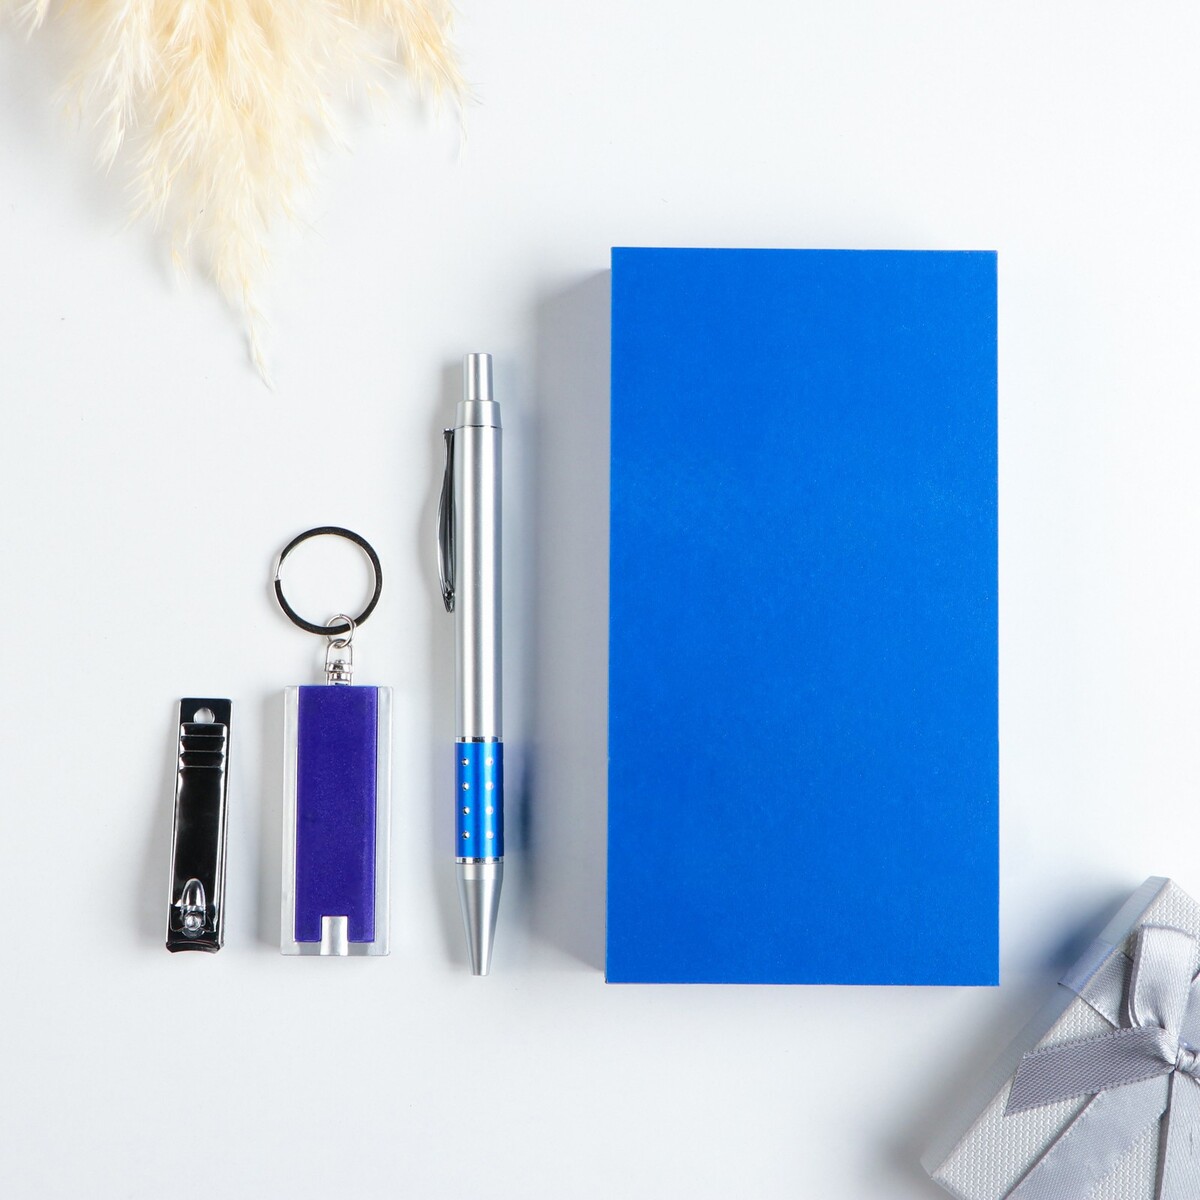 Набор подарочный 3в1 (ручка, кусачки, фонарик синий) набор подарочный 4в1 2 ручки кусачки фонарик синий